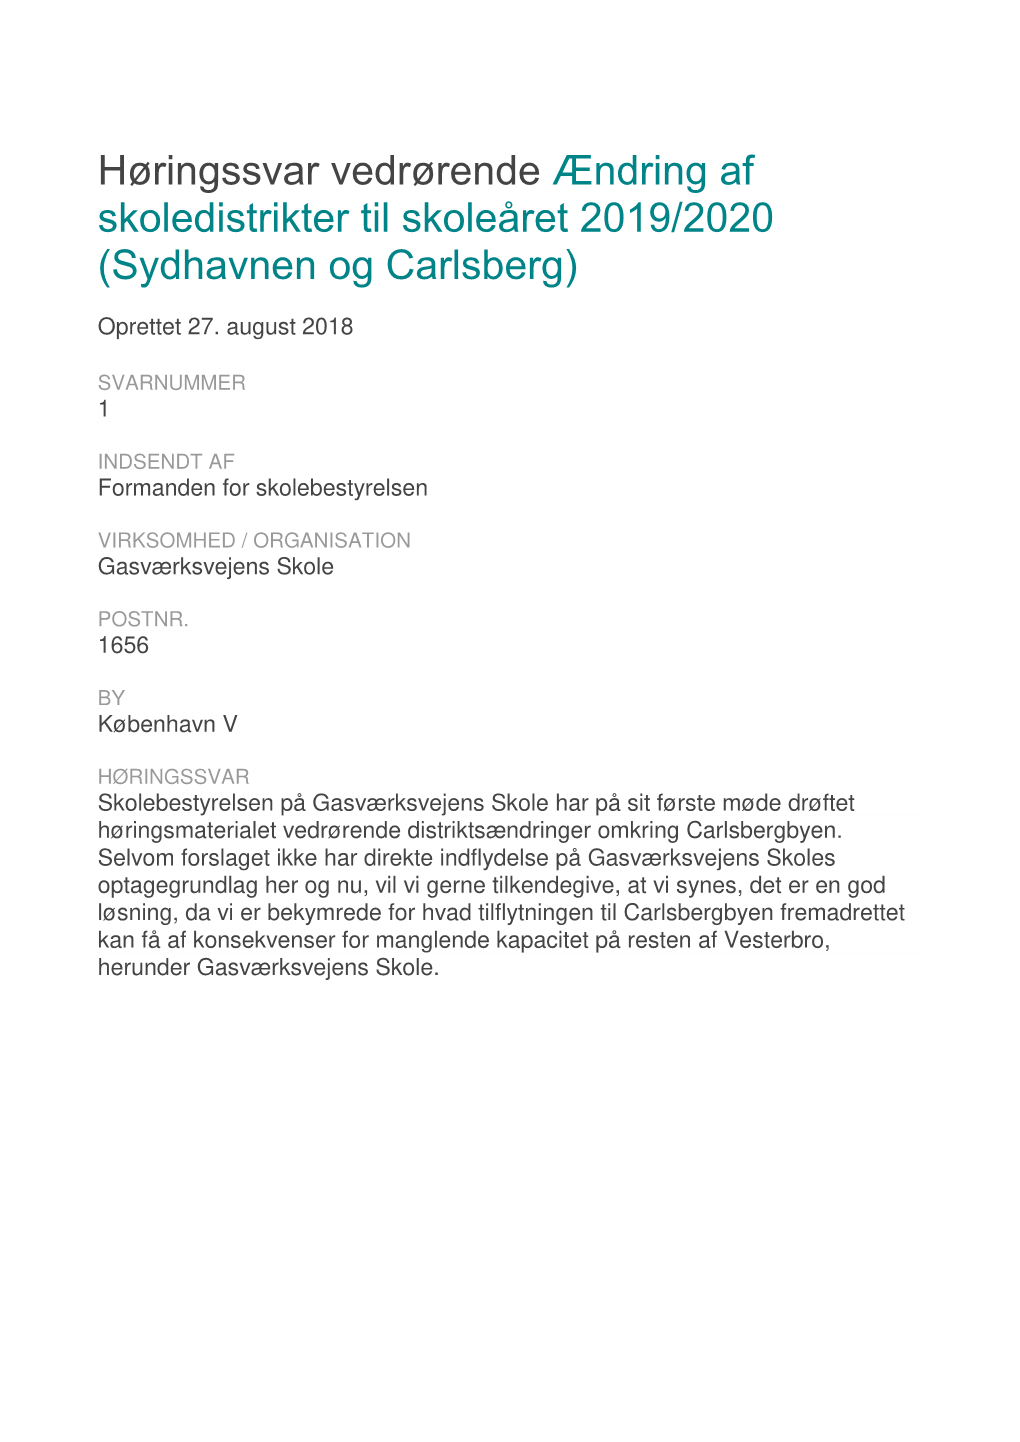 Høringssvar Vedrørende Ændring Af Skoledistrikter Til Skoleåret 2019/2020 (Sydhavnen Og Carlsberg)